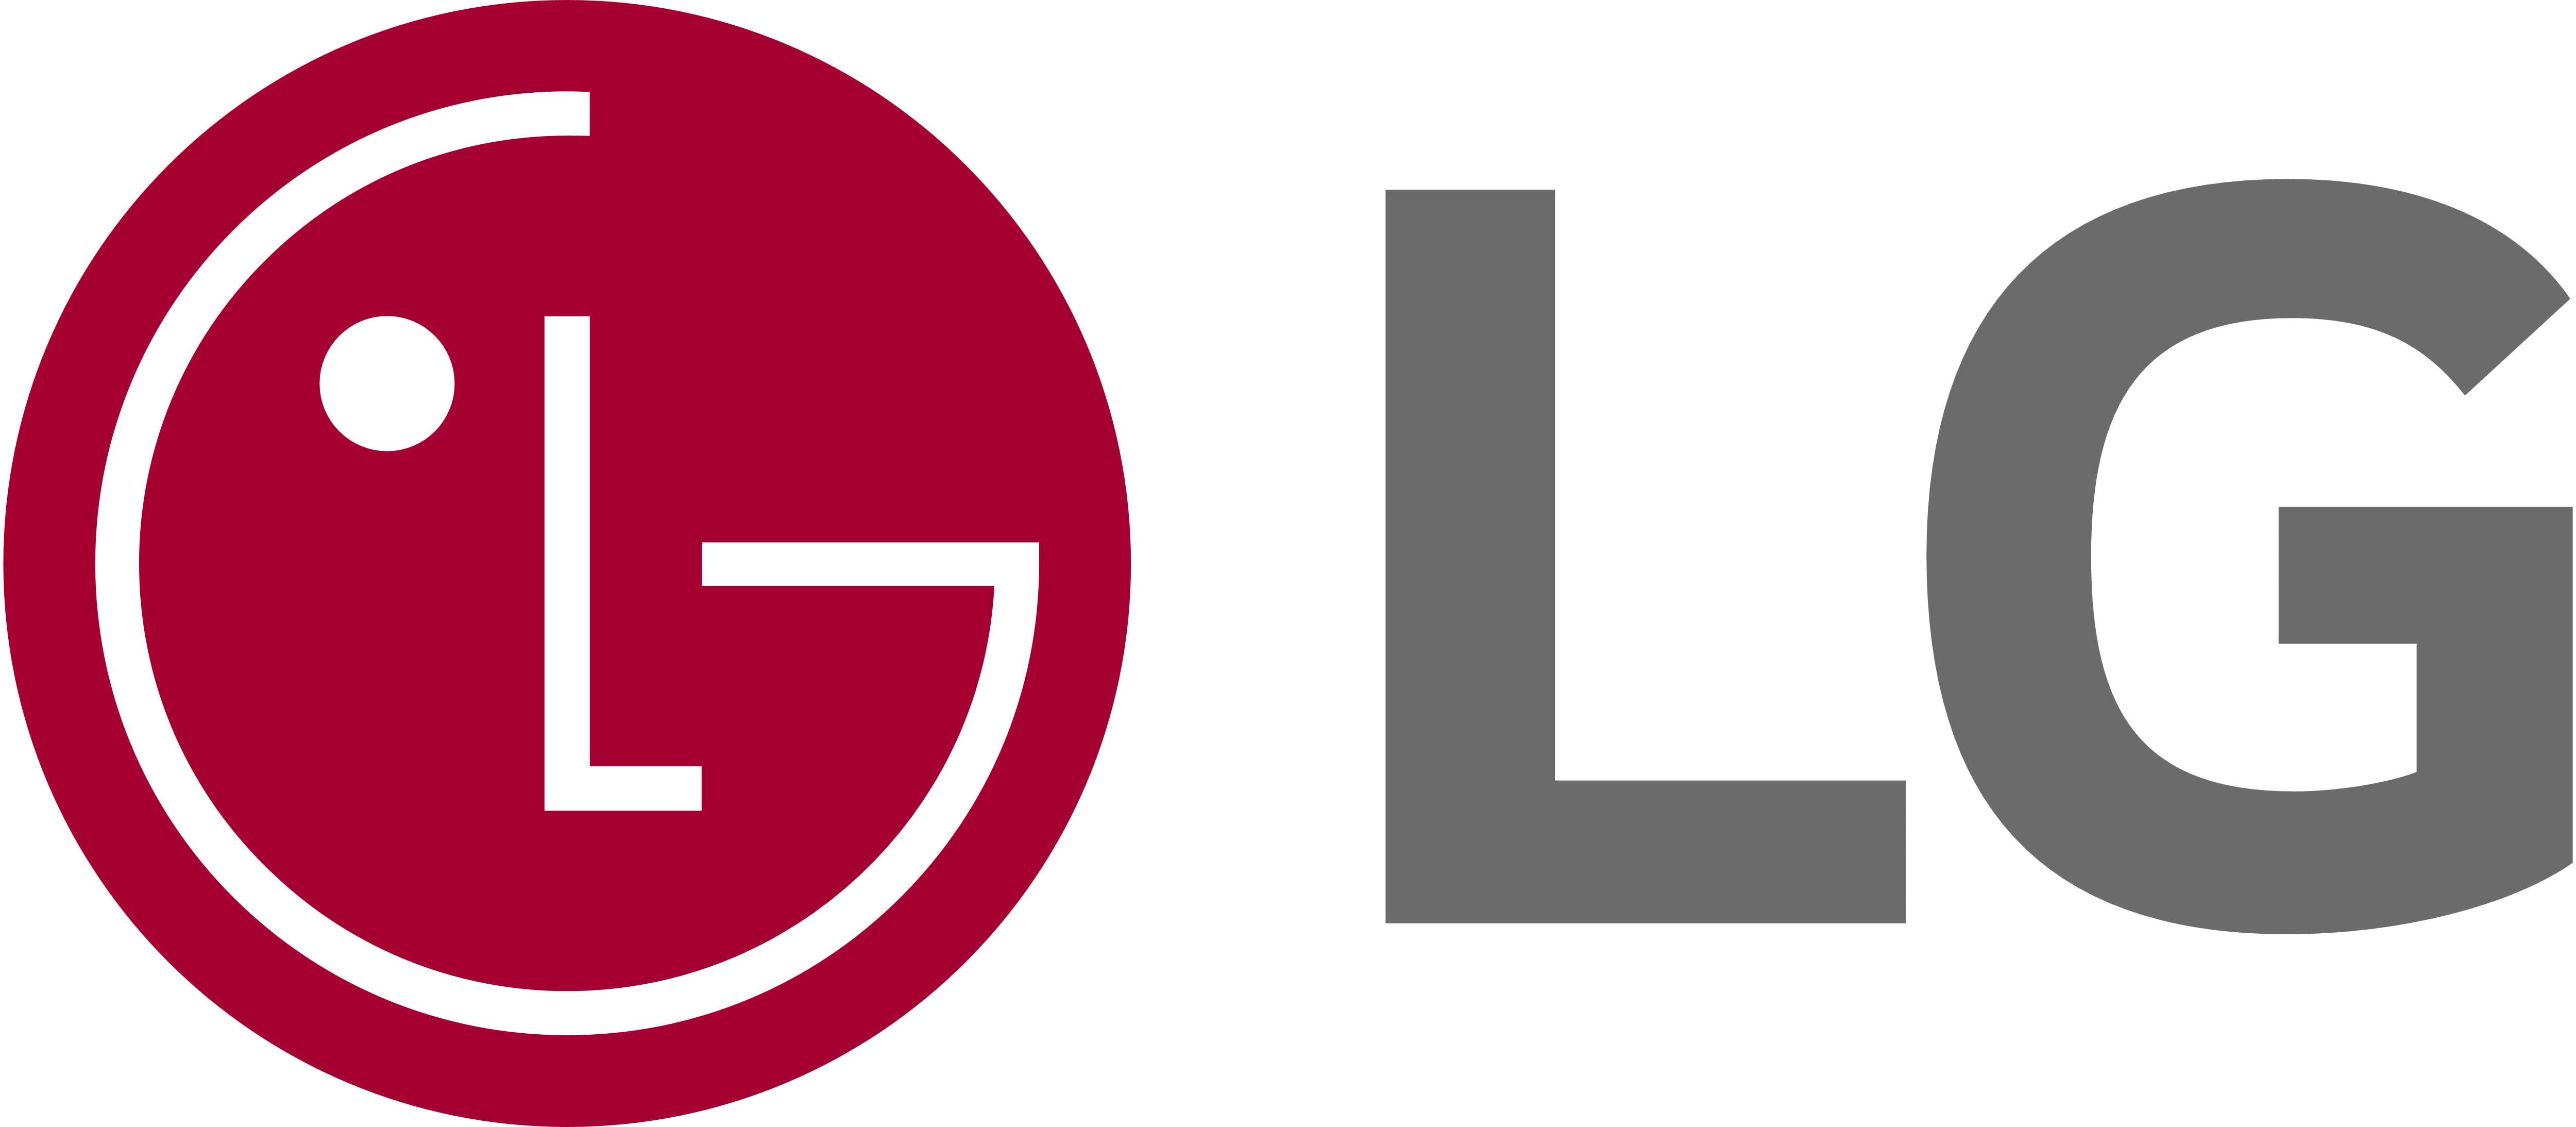 LG Electric Range Repair, LG Stove Repair